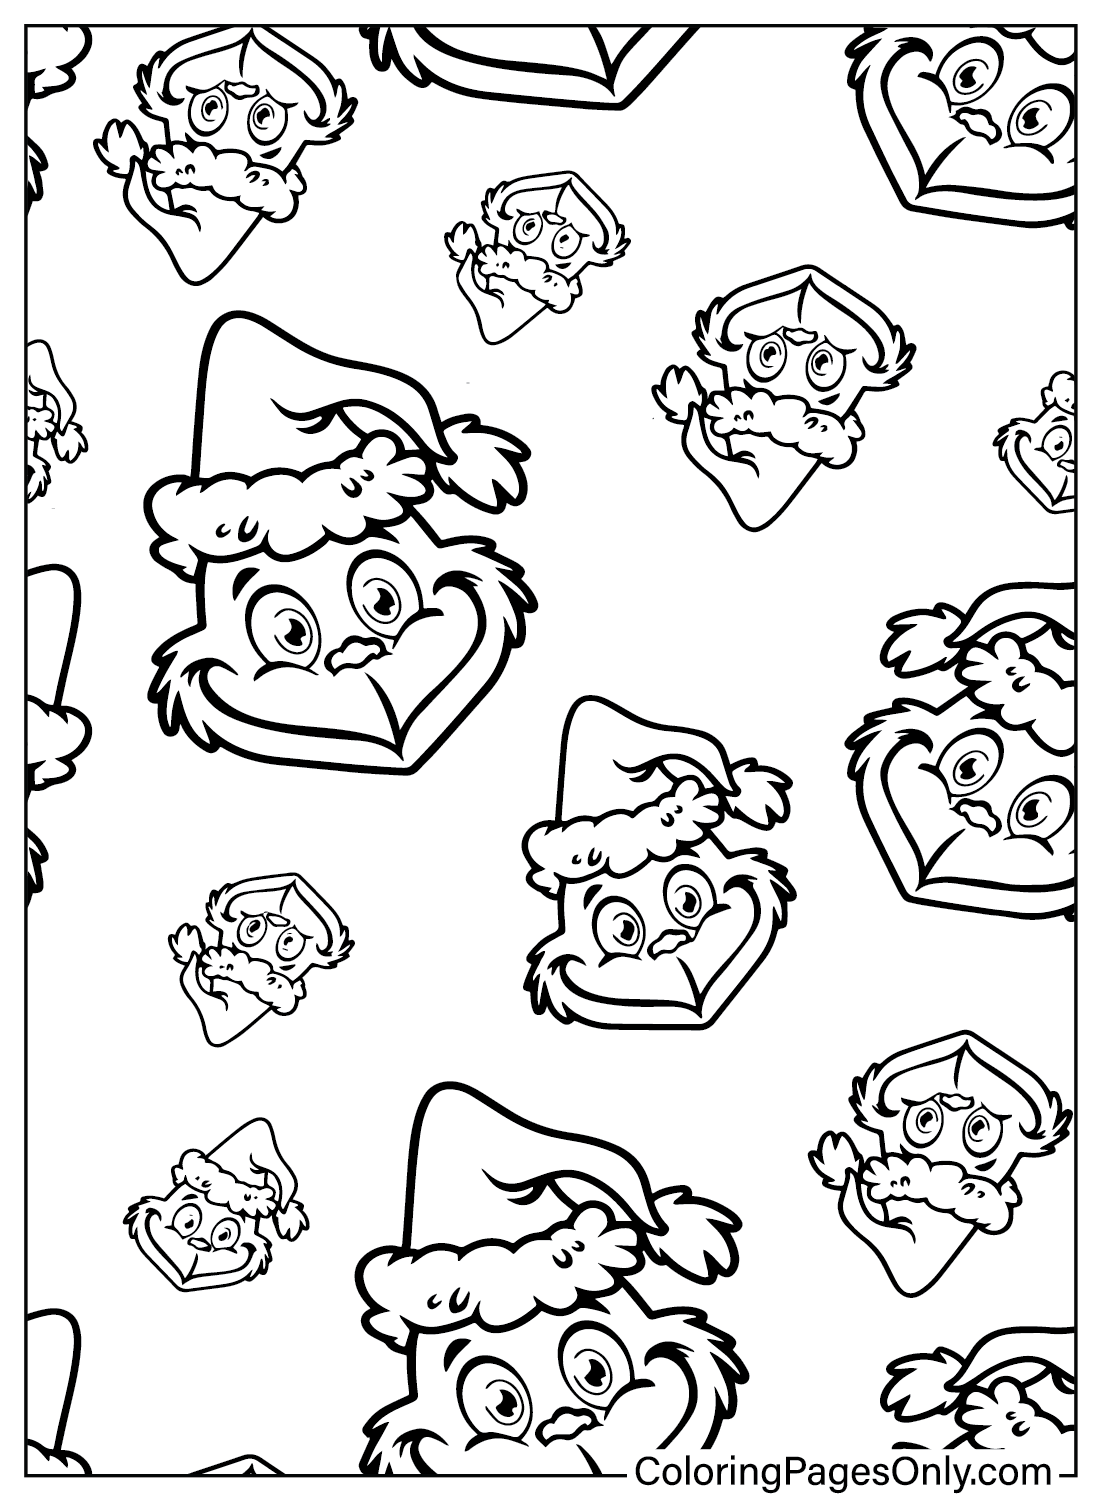 Página para colorear del patrón Grinch de Grinch